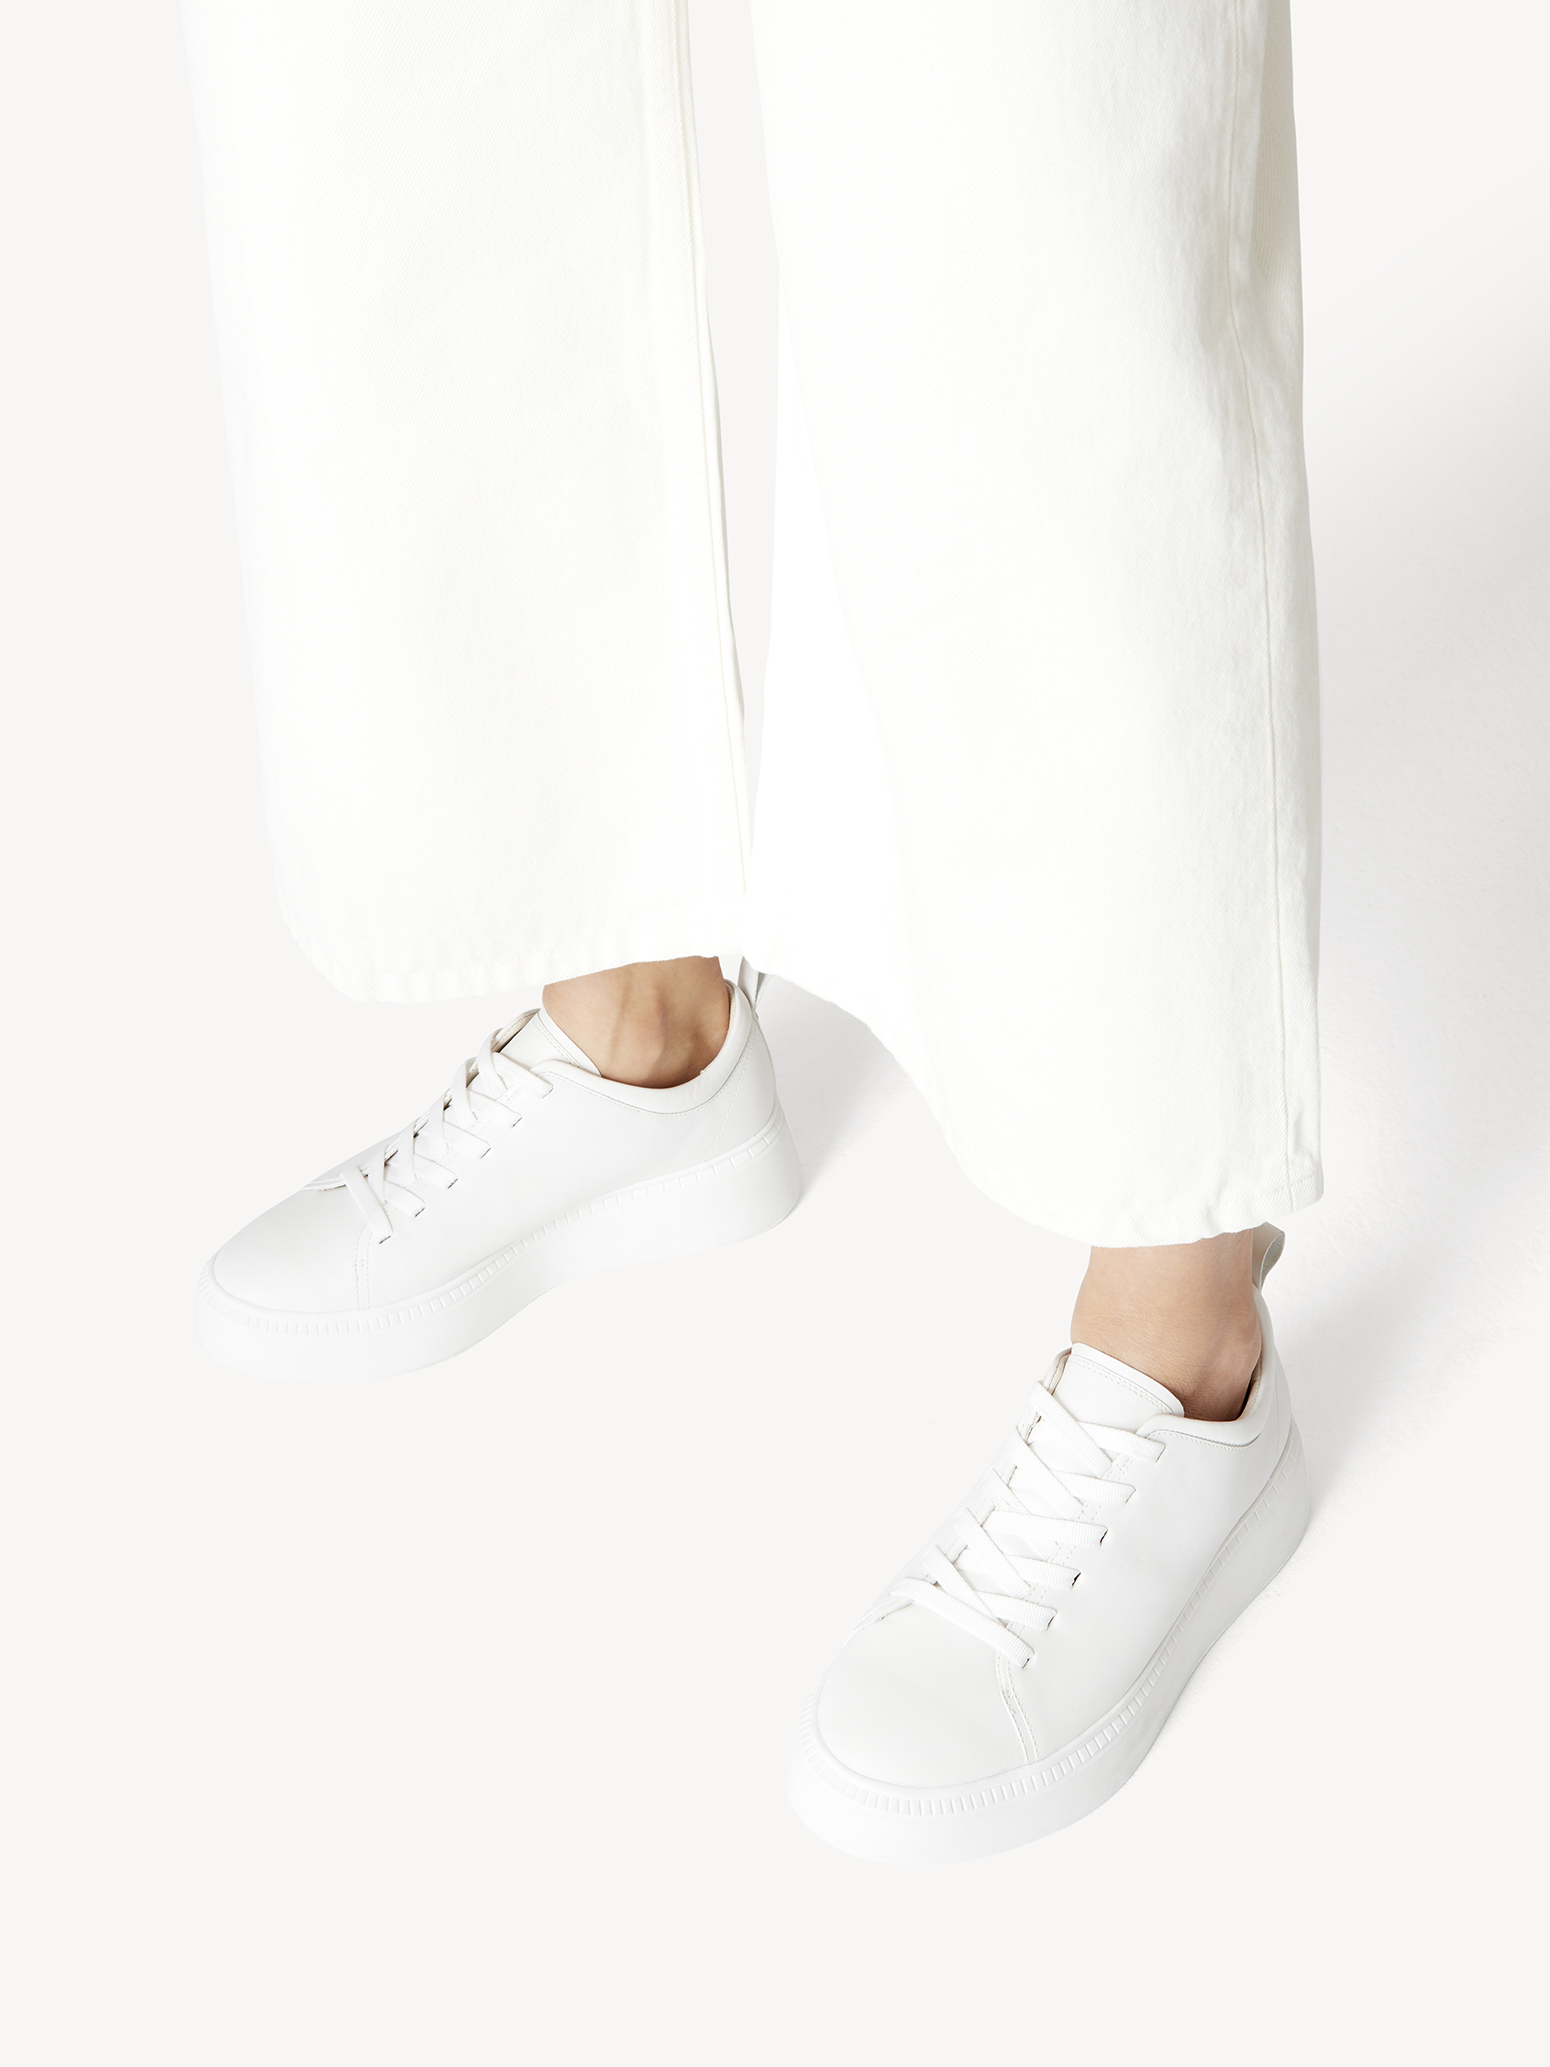 Ботинки на шнурках женские (белый) - изображение №1